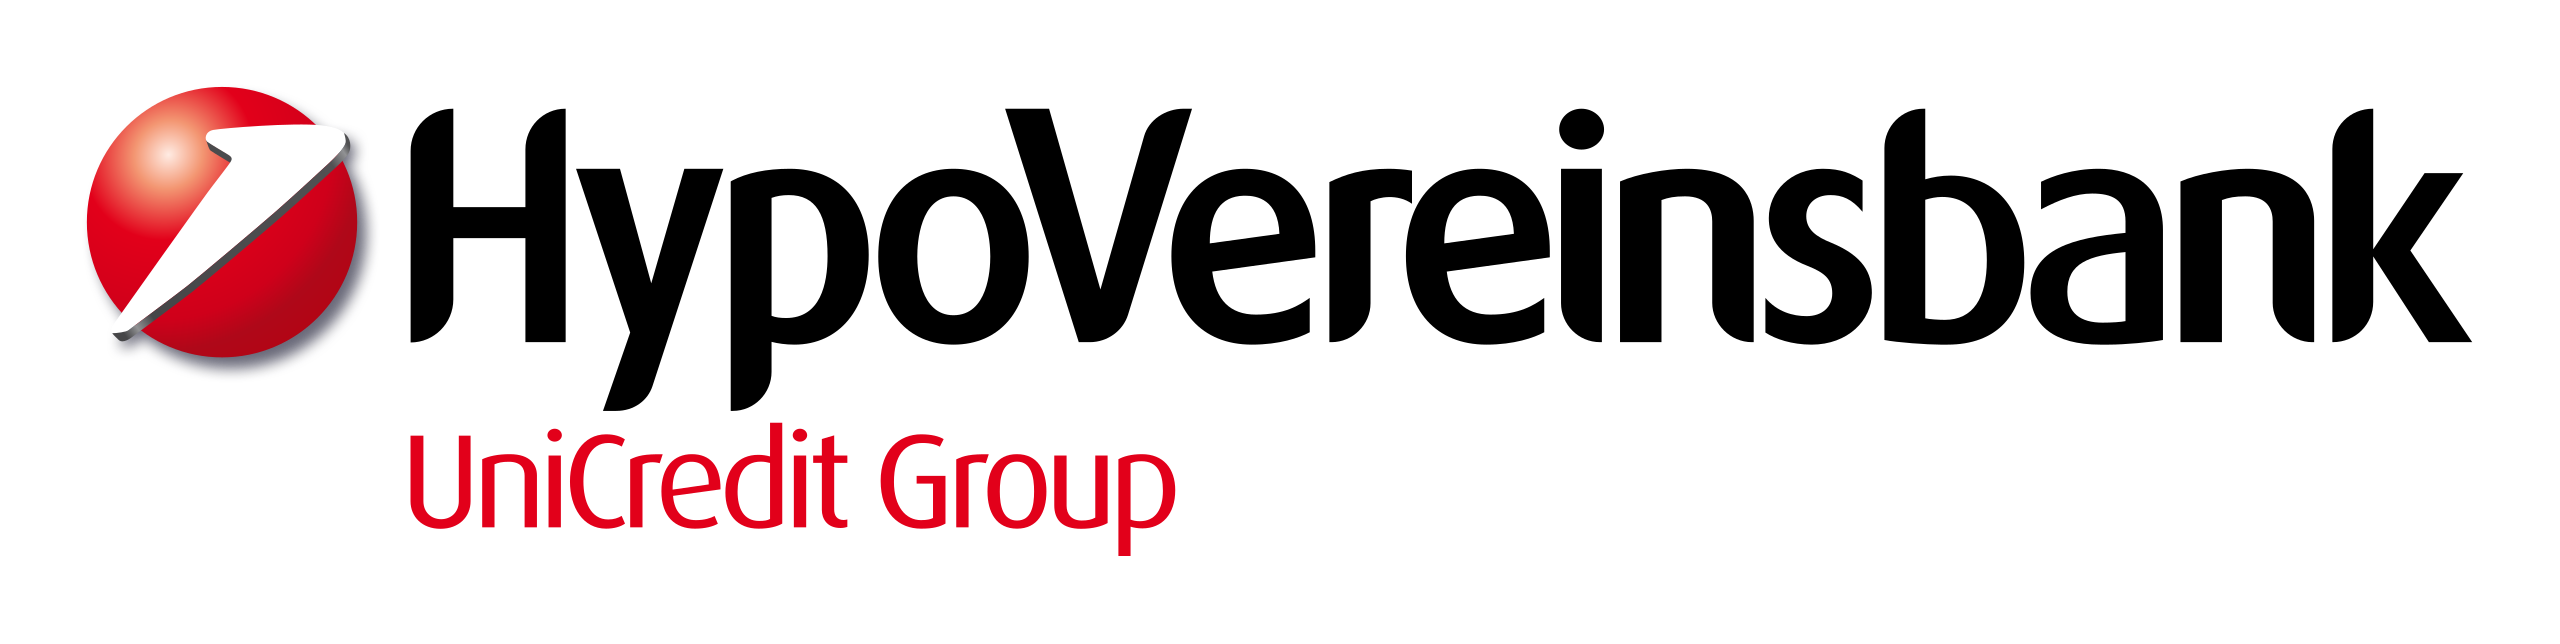 HypoVereinsbank - UniCredit - Deutschland logo